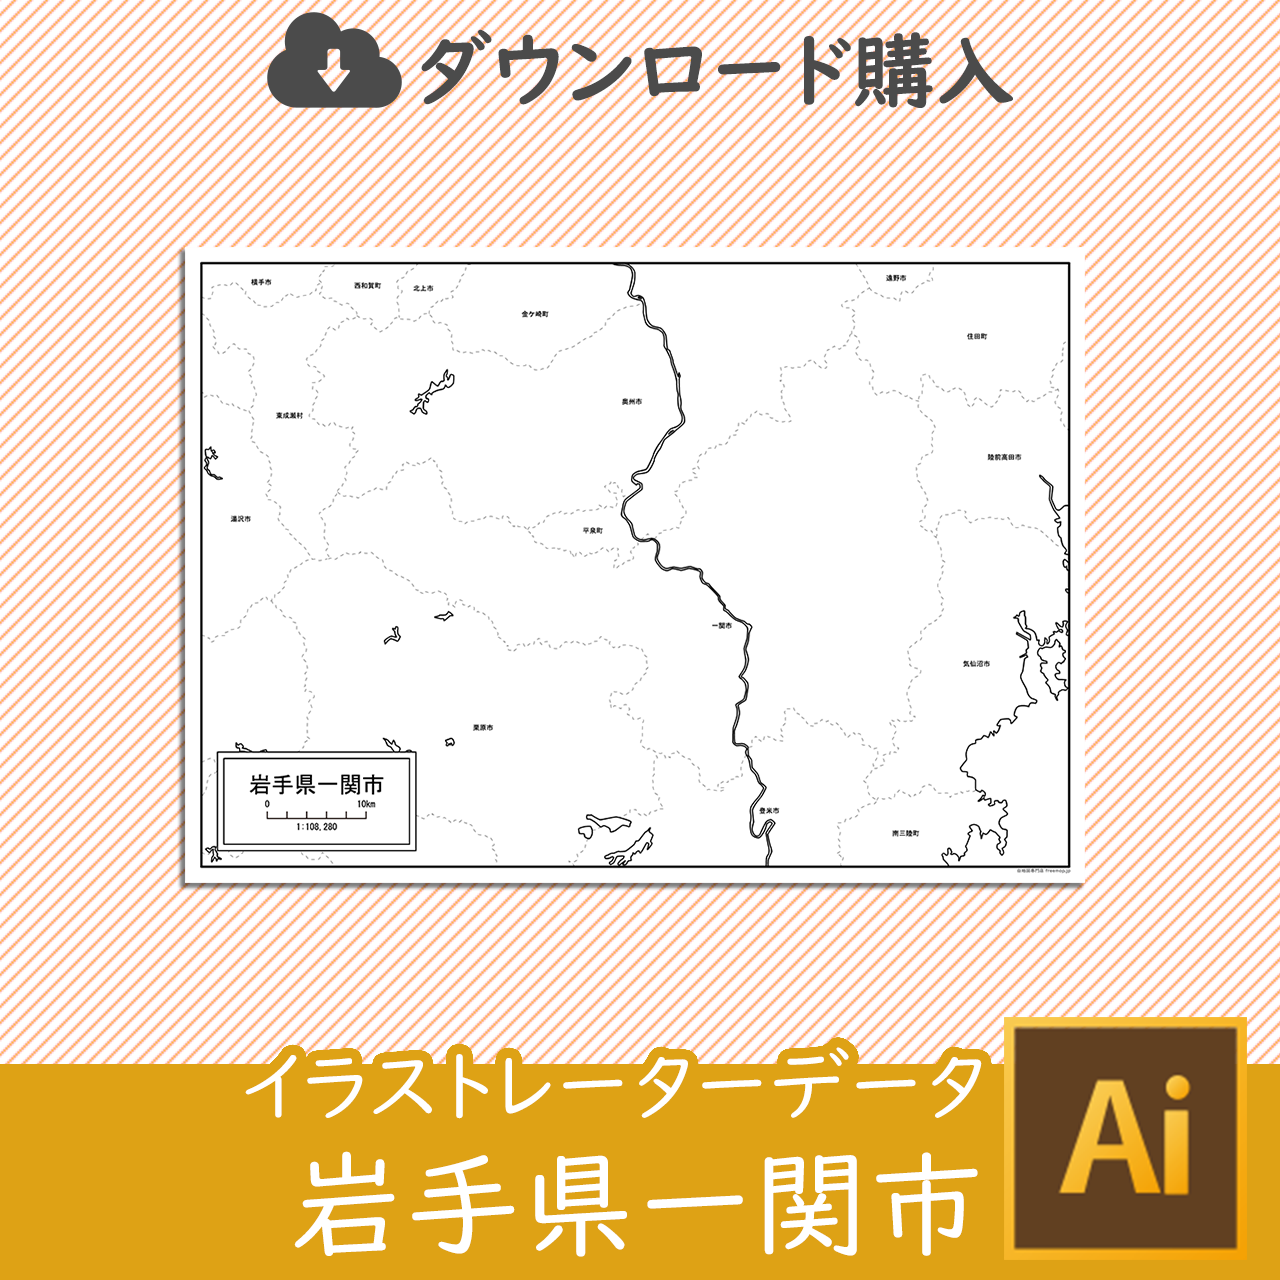 一関市のaiデータのサムネイル画像